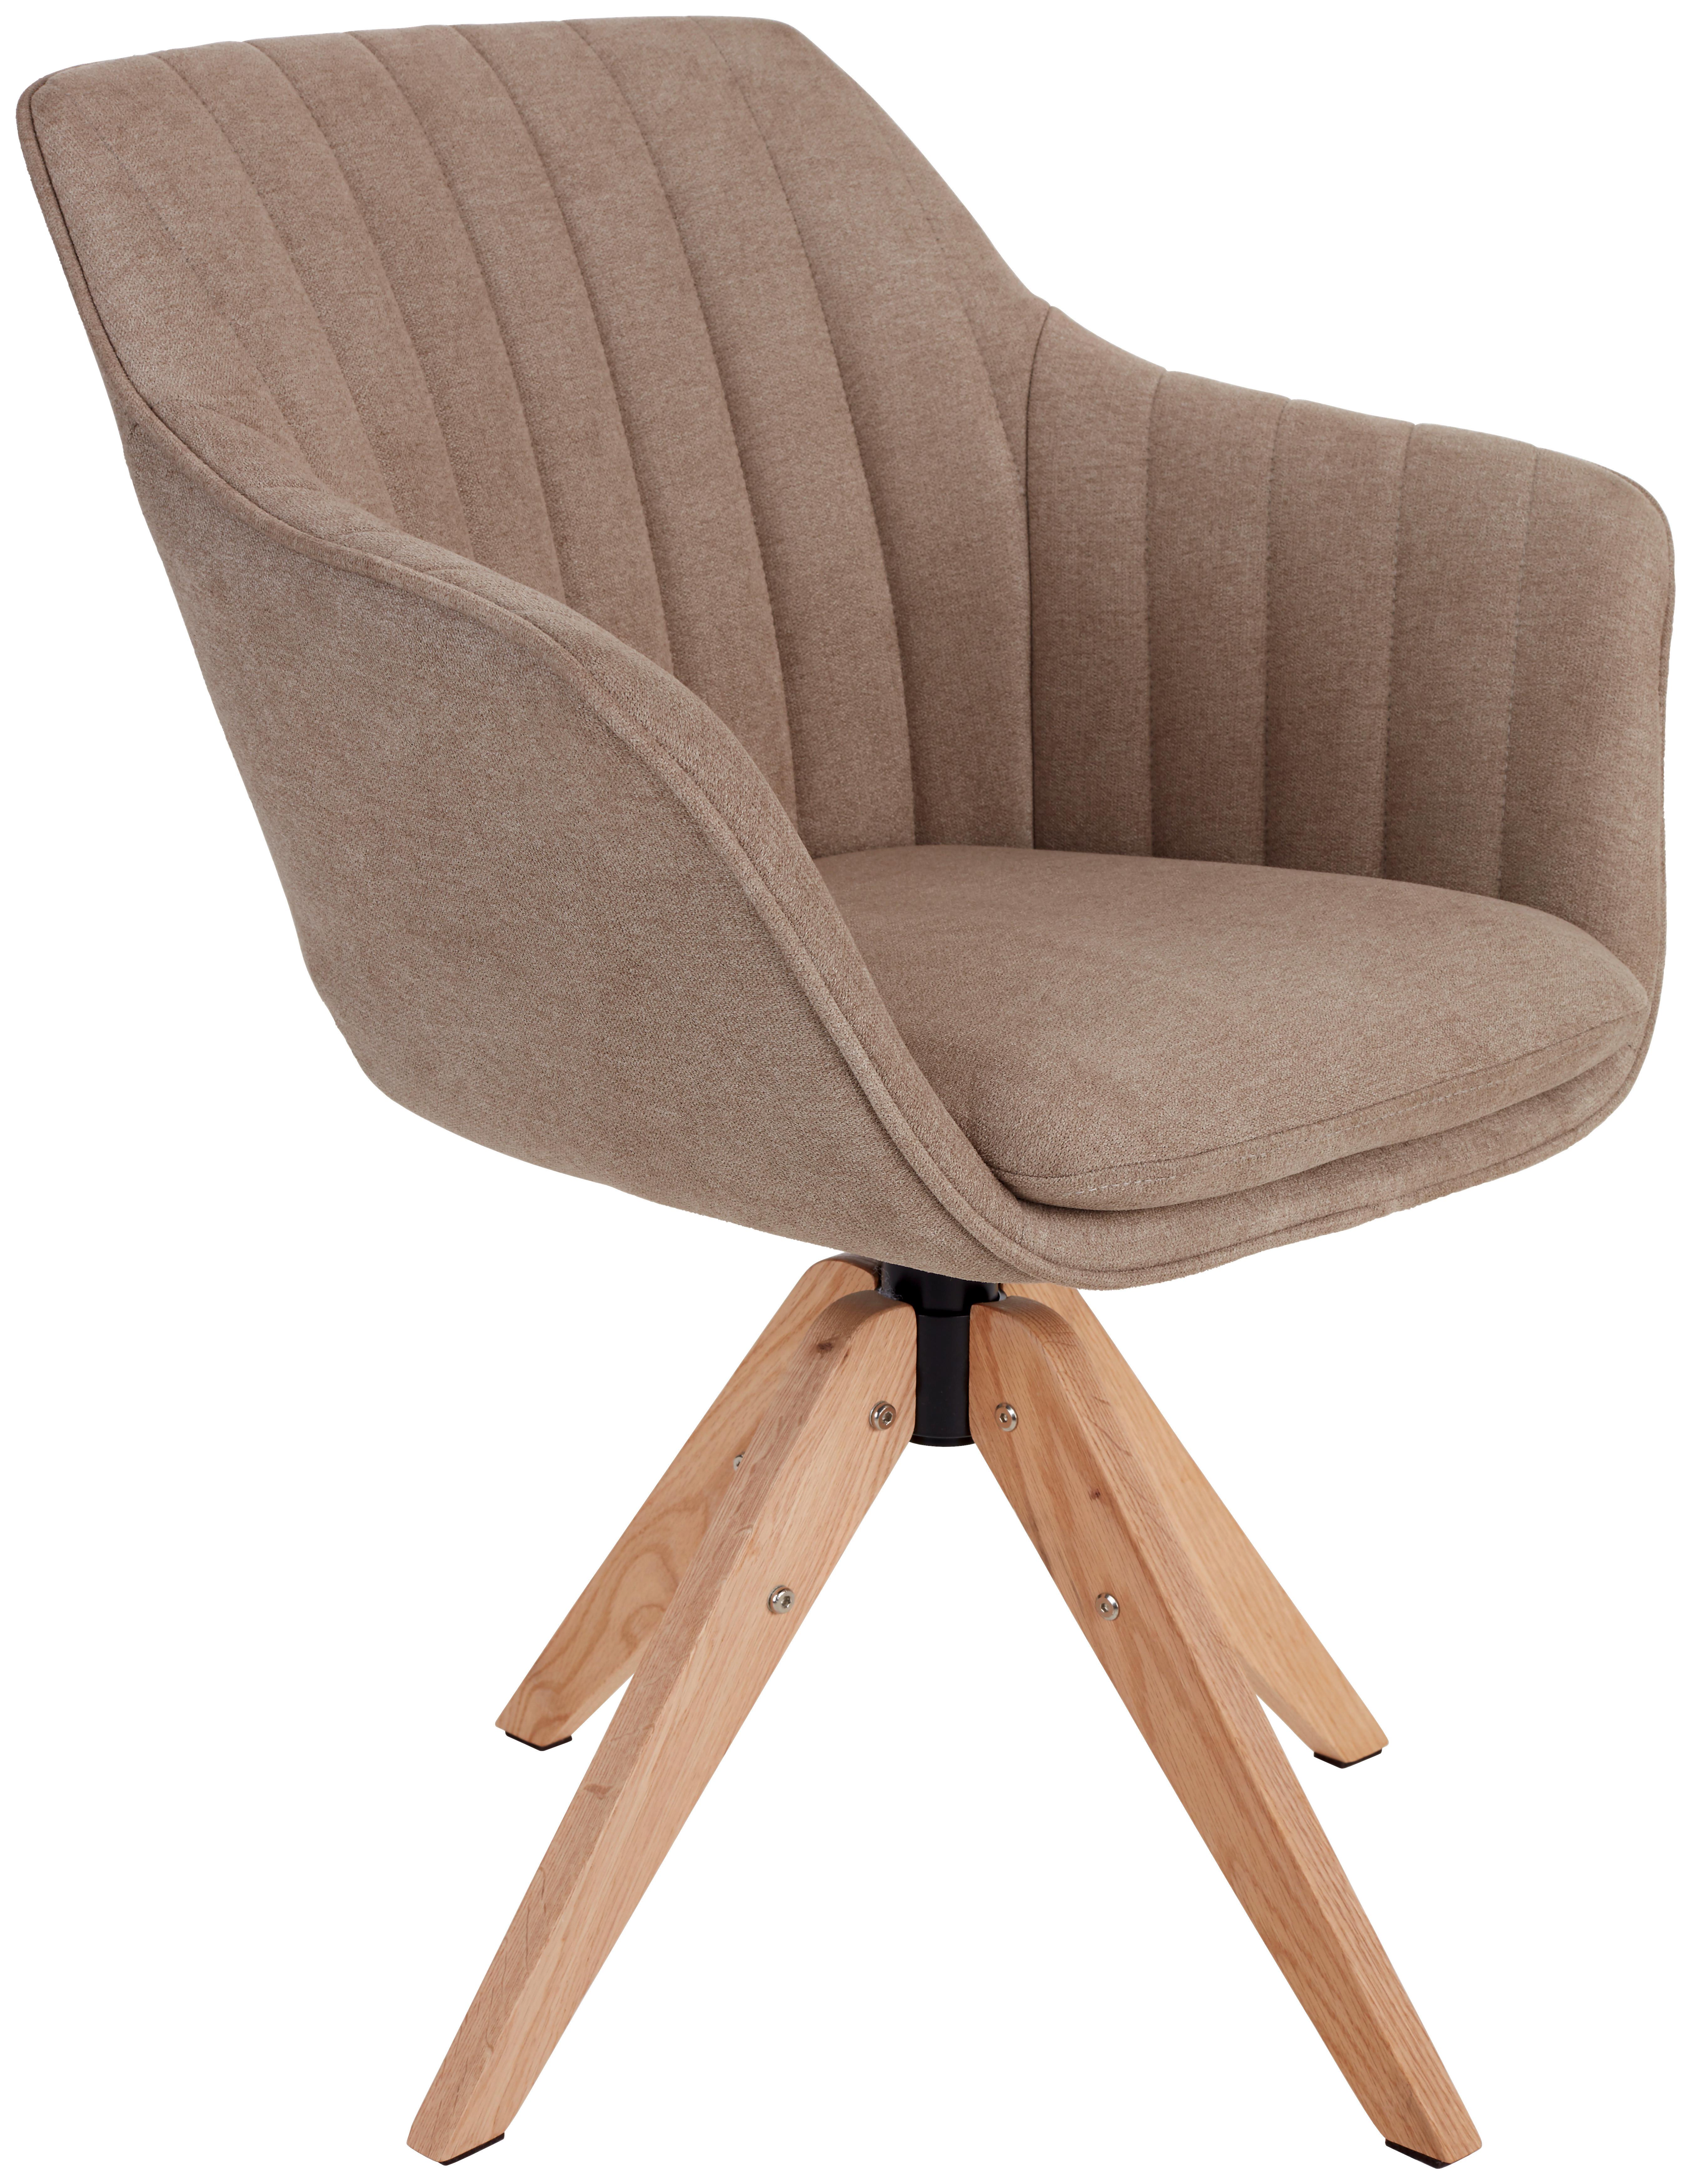 Armlehnstuhl Belluno Greige mit drehbarerer Sitzfläche - Greige/Eichefarben, MODERN, Holz/Textil (60/88/57,5cm) - MID.YOU